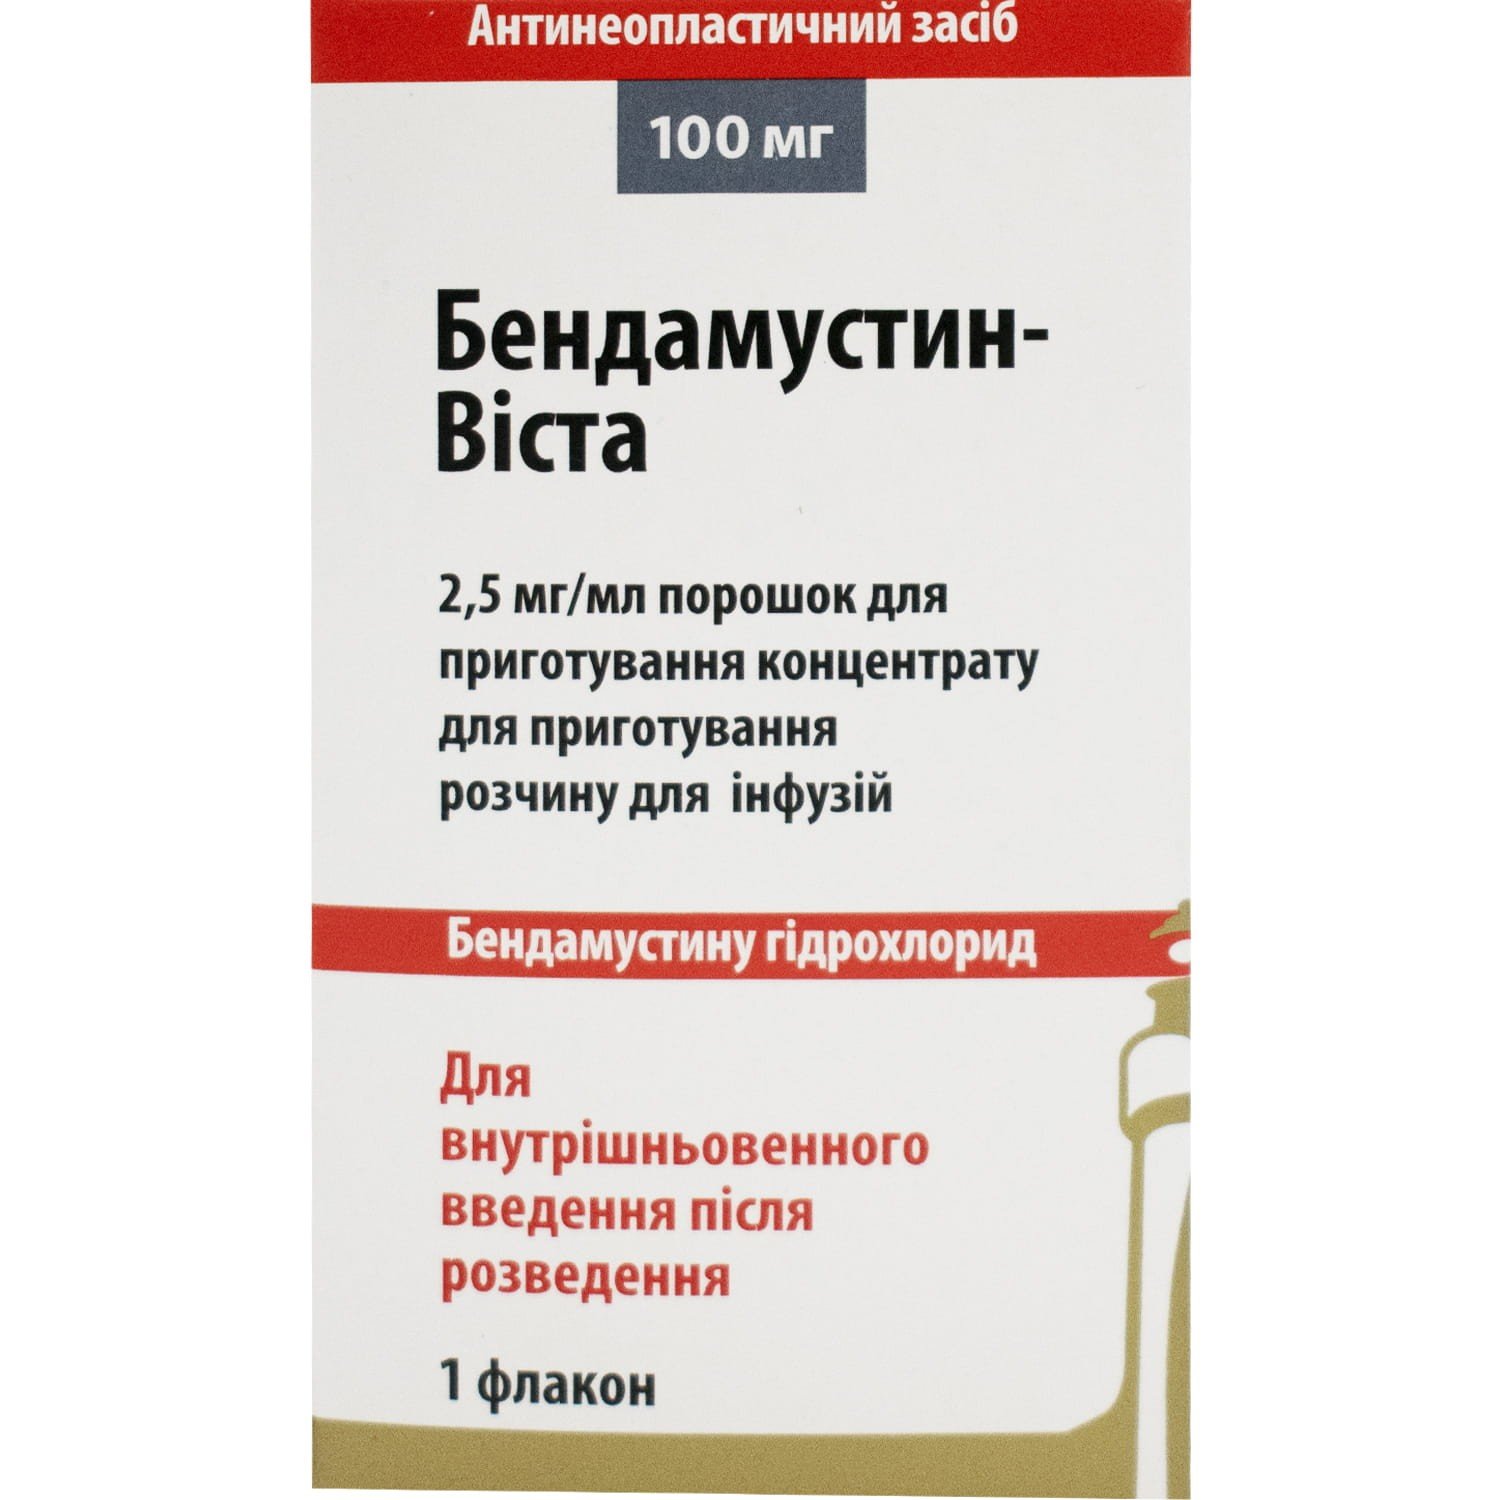 Бендамустин-Віста порошок по 2,5 мг/мл, в флаконі 100 мг: інструкція .